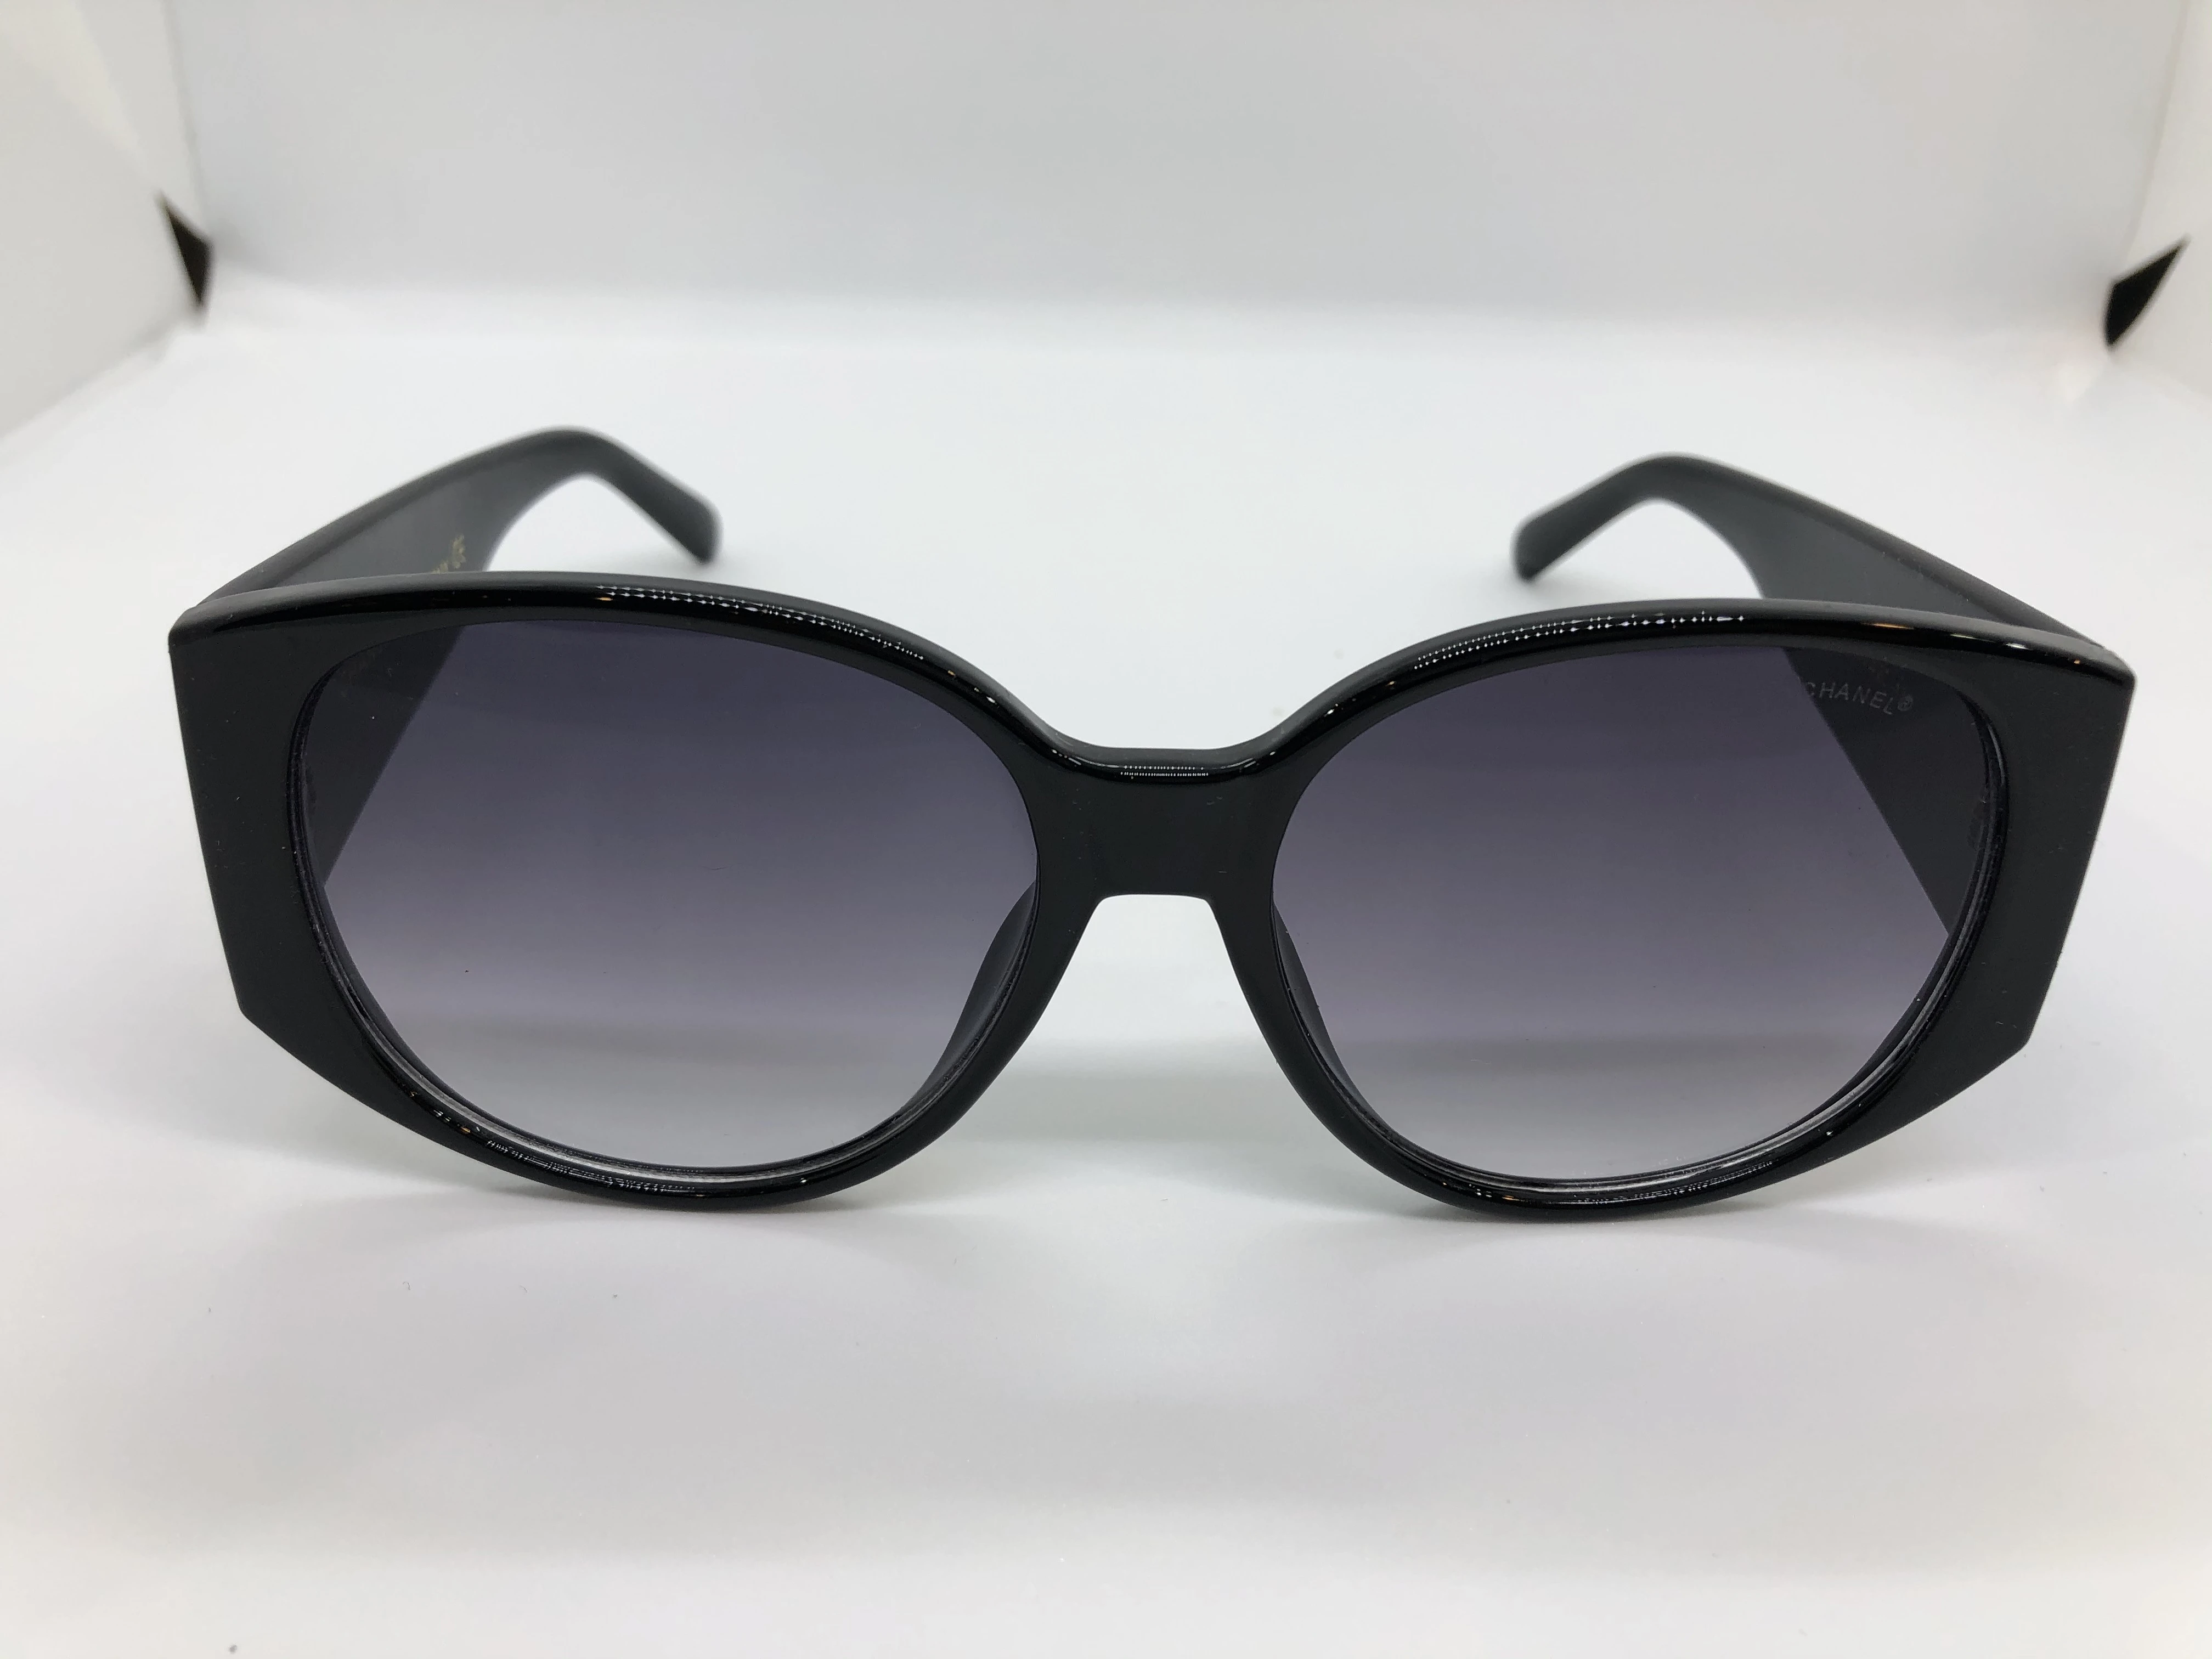 نظارة شمسية - من شانيل - باطاراسود بولي كاربونات - وعدسات سوداء متدرجة - وزراع بولي كاربونات اسود - بشعار الماركة ابيض - حريمي